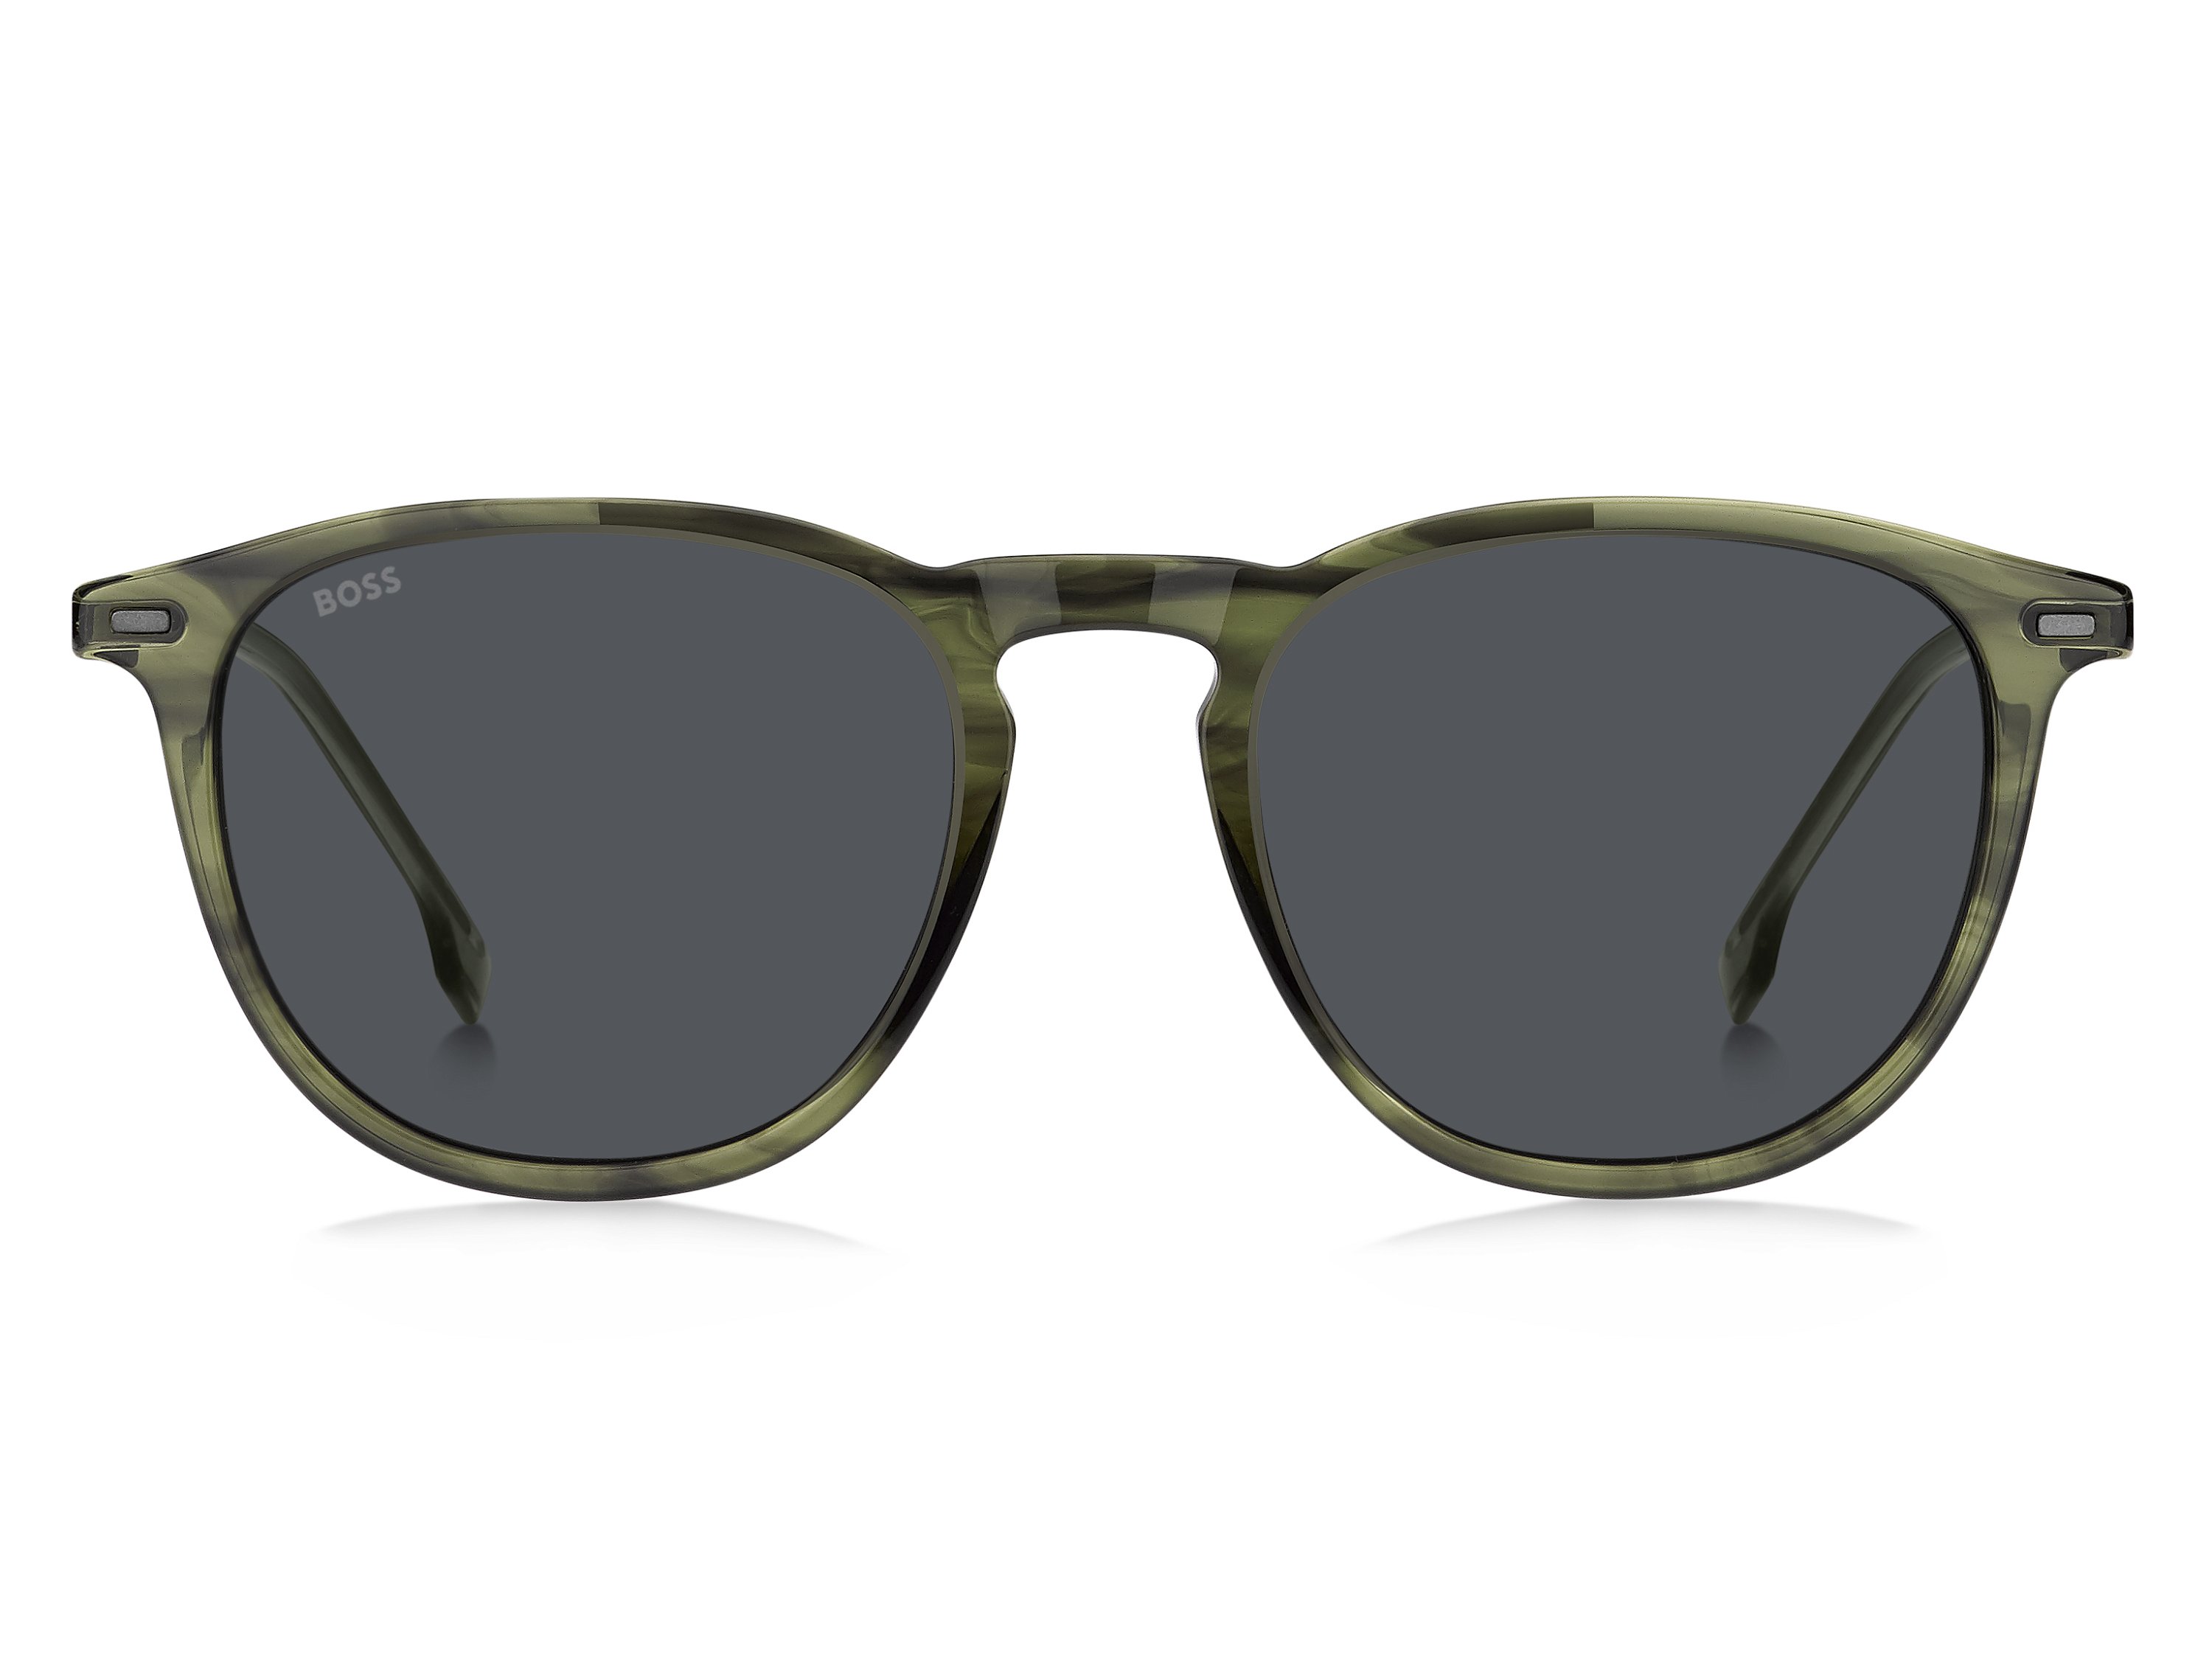 Das Bild zeigt die Sonnenbrille BOSS1639S XYG von der Marke BOSS in Grün.